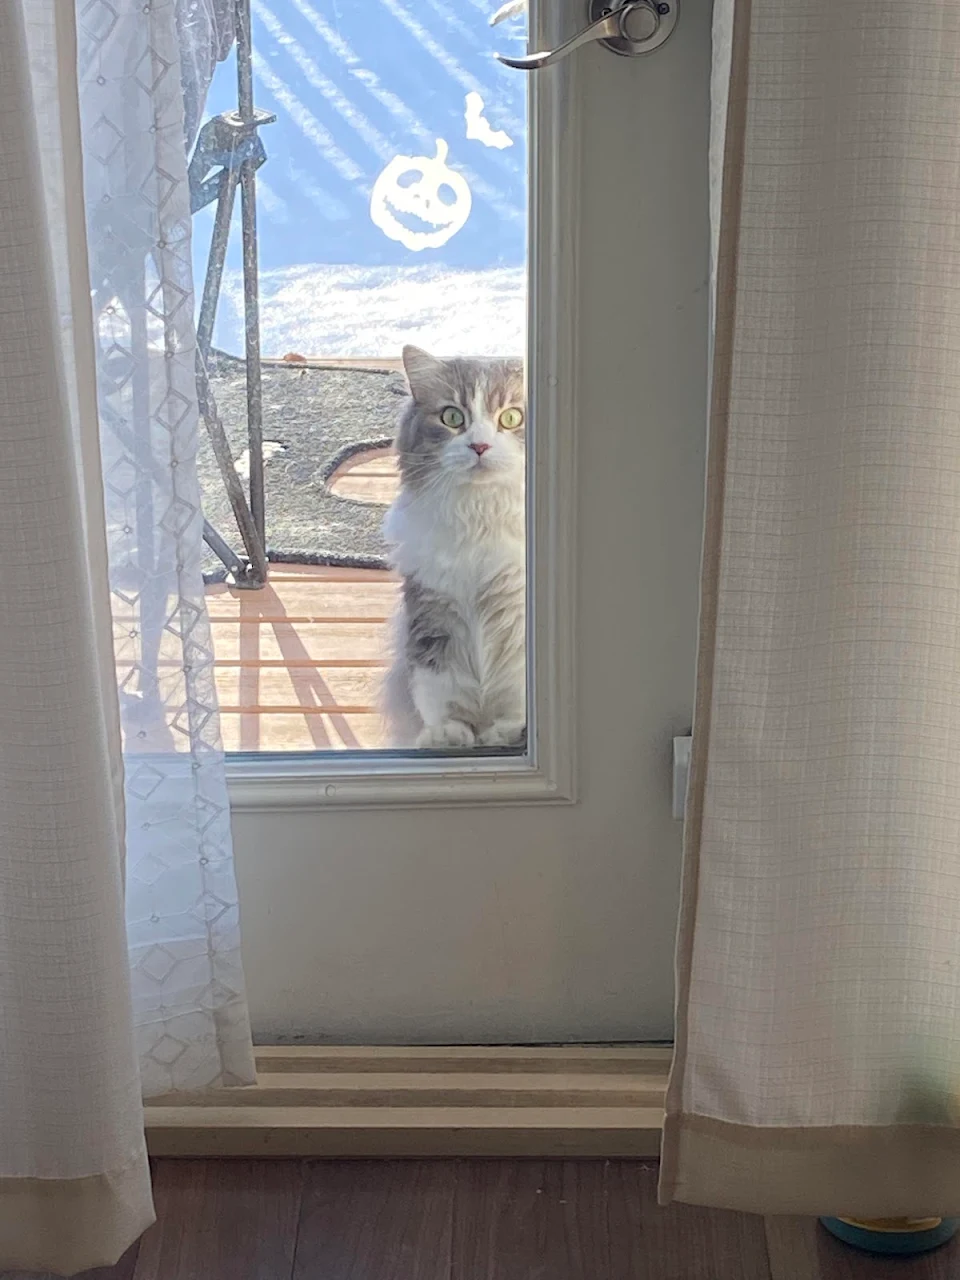 Let me in